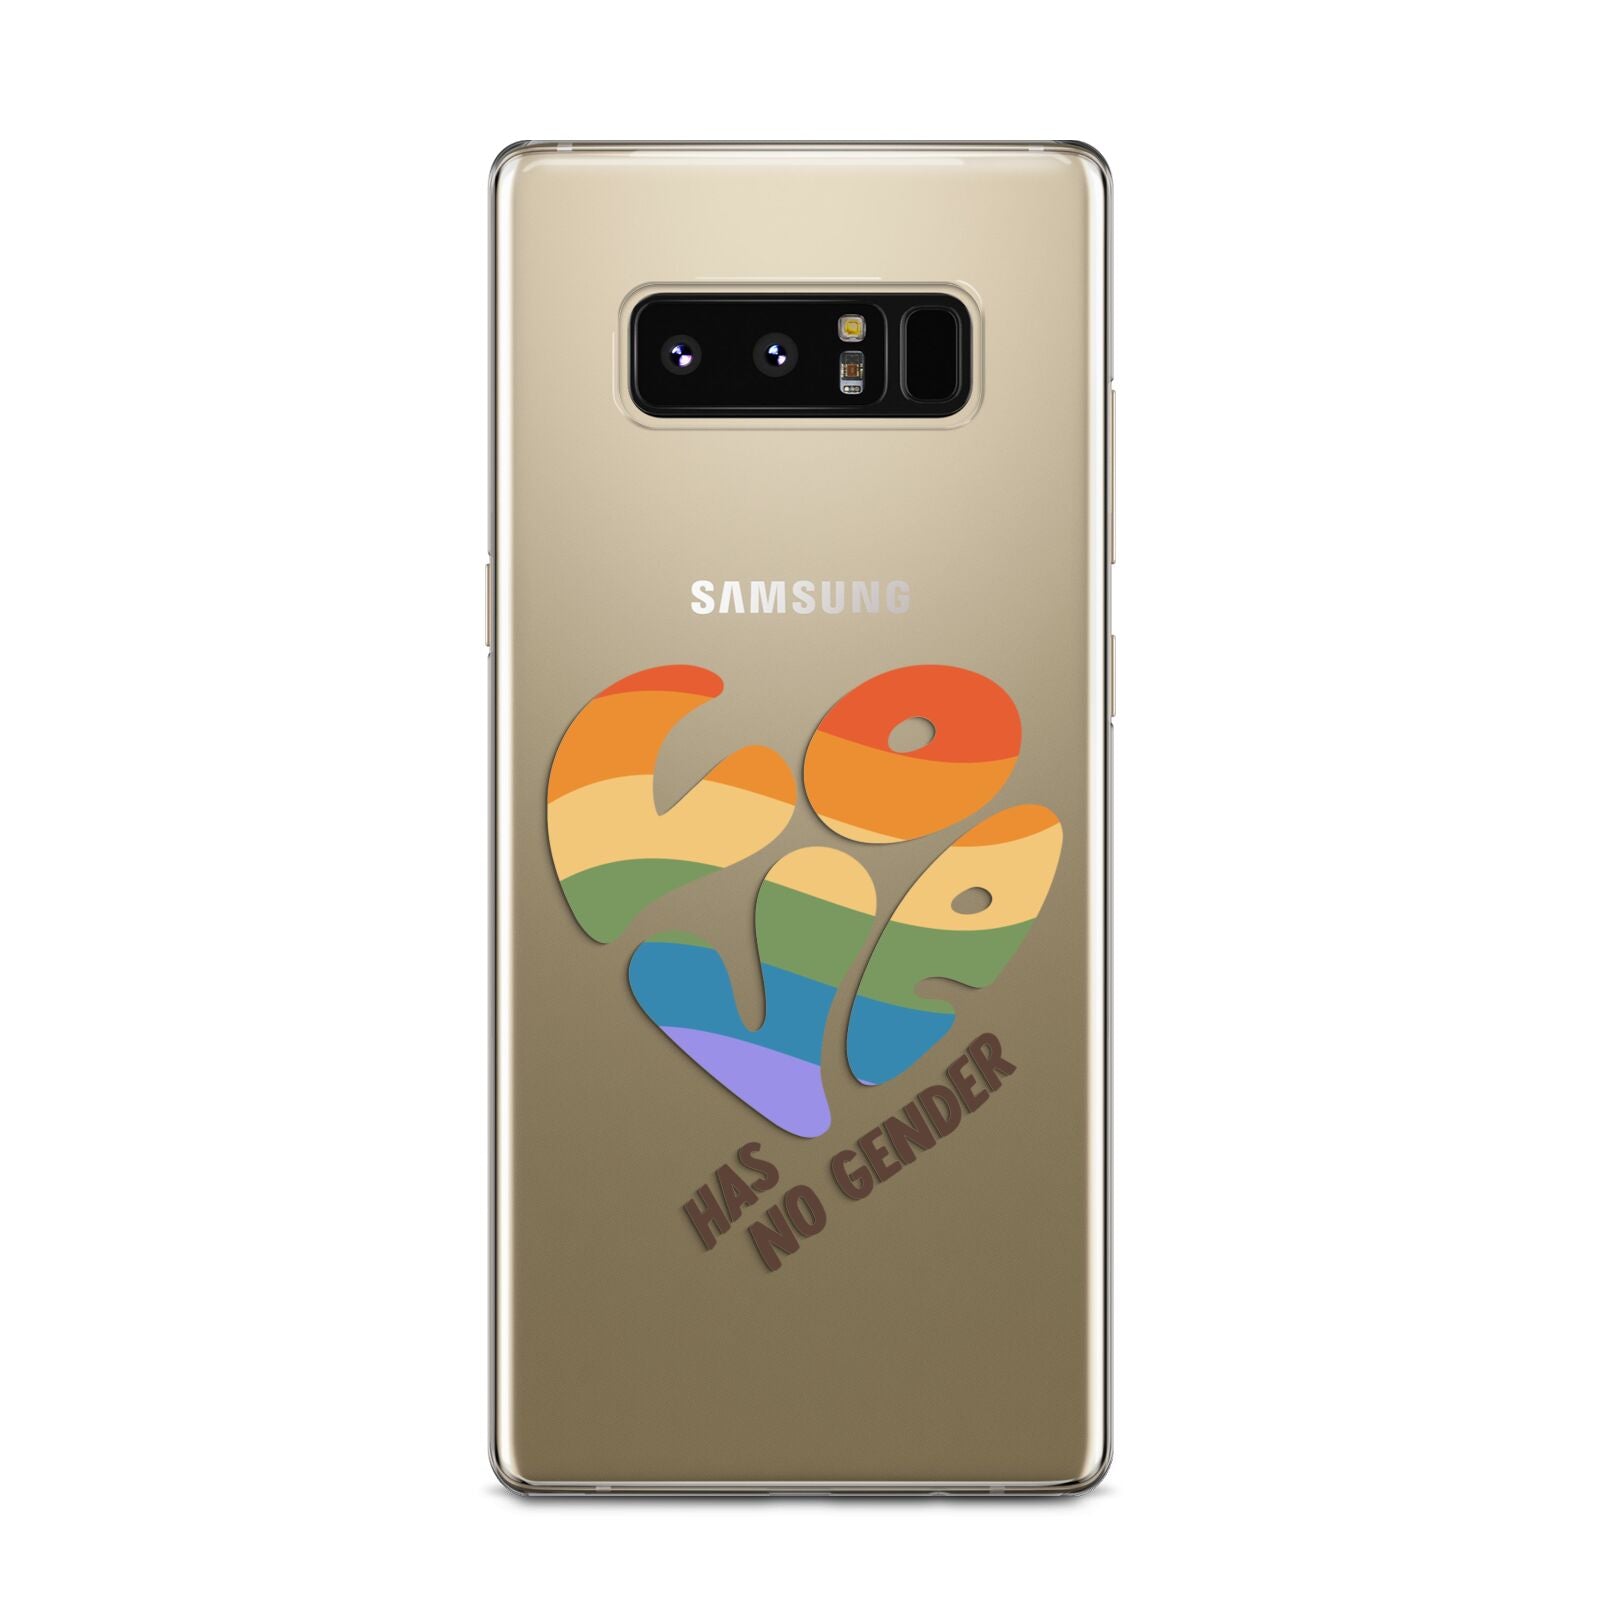 Love Has No Gender Samsung Galaxy Note 8 Case